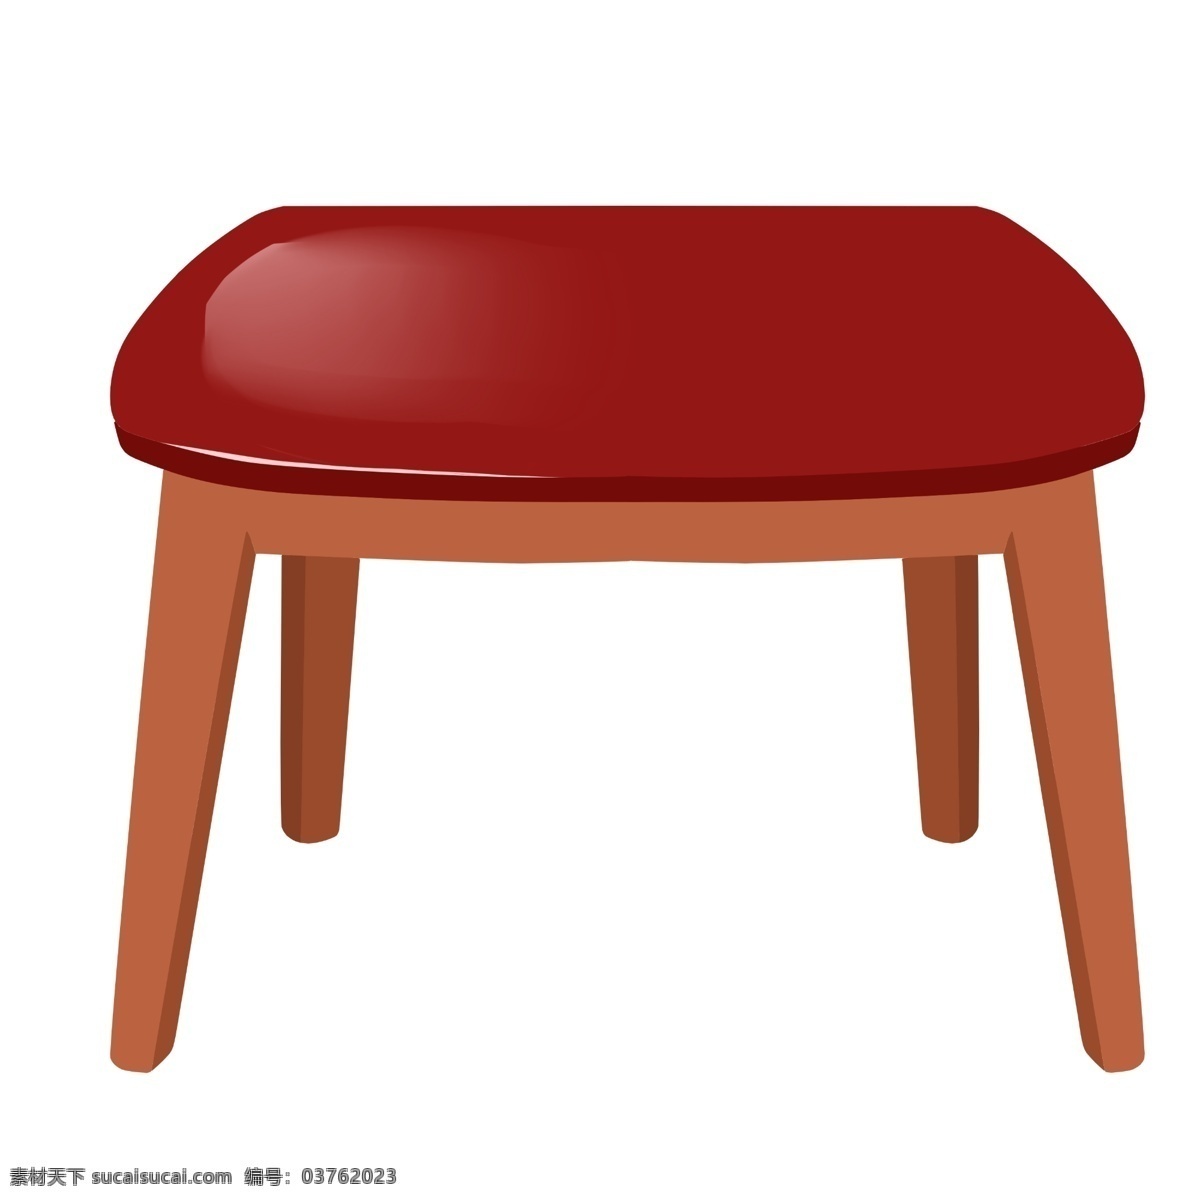 红色 家具 椅子 插画 红色的椅子 皮面的椅子 卡通插画 椅子插画 家具插画 家具椅子 木质椅子